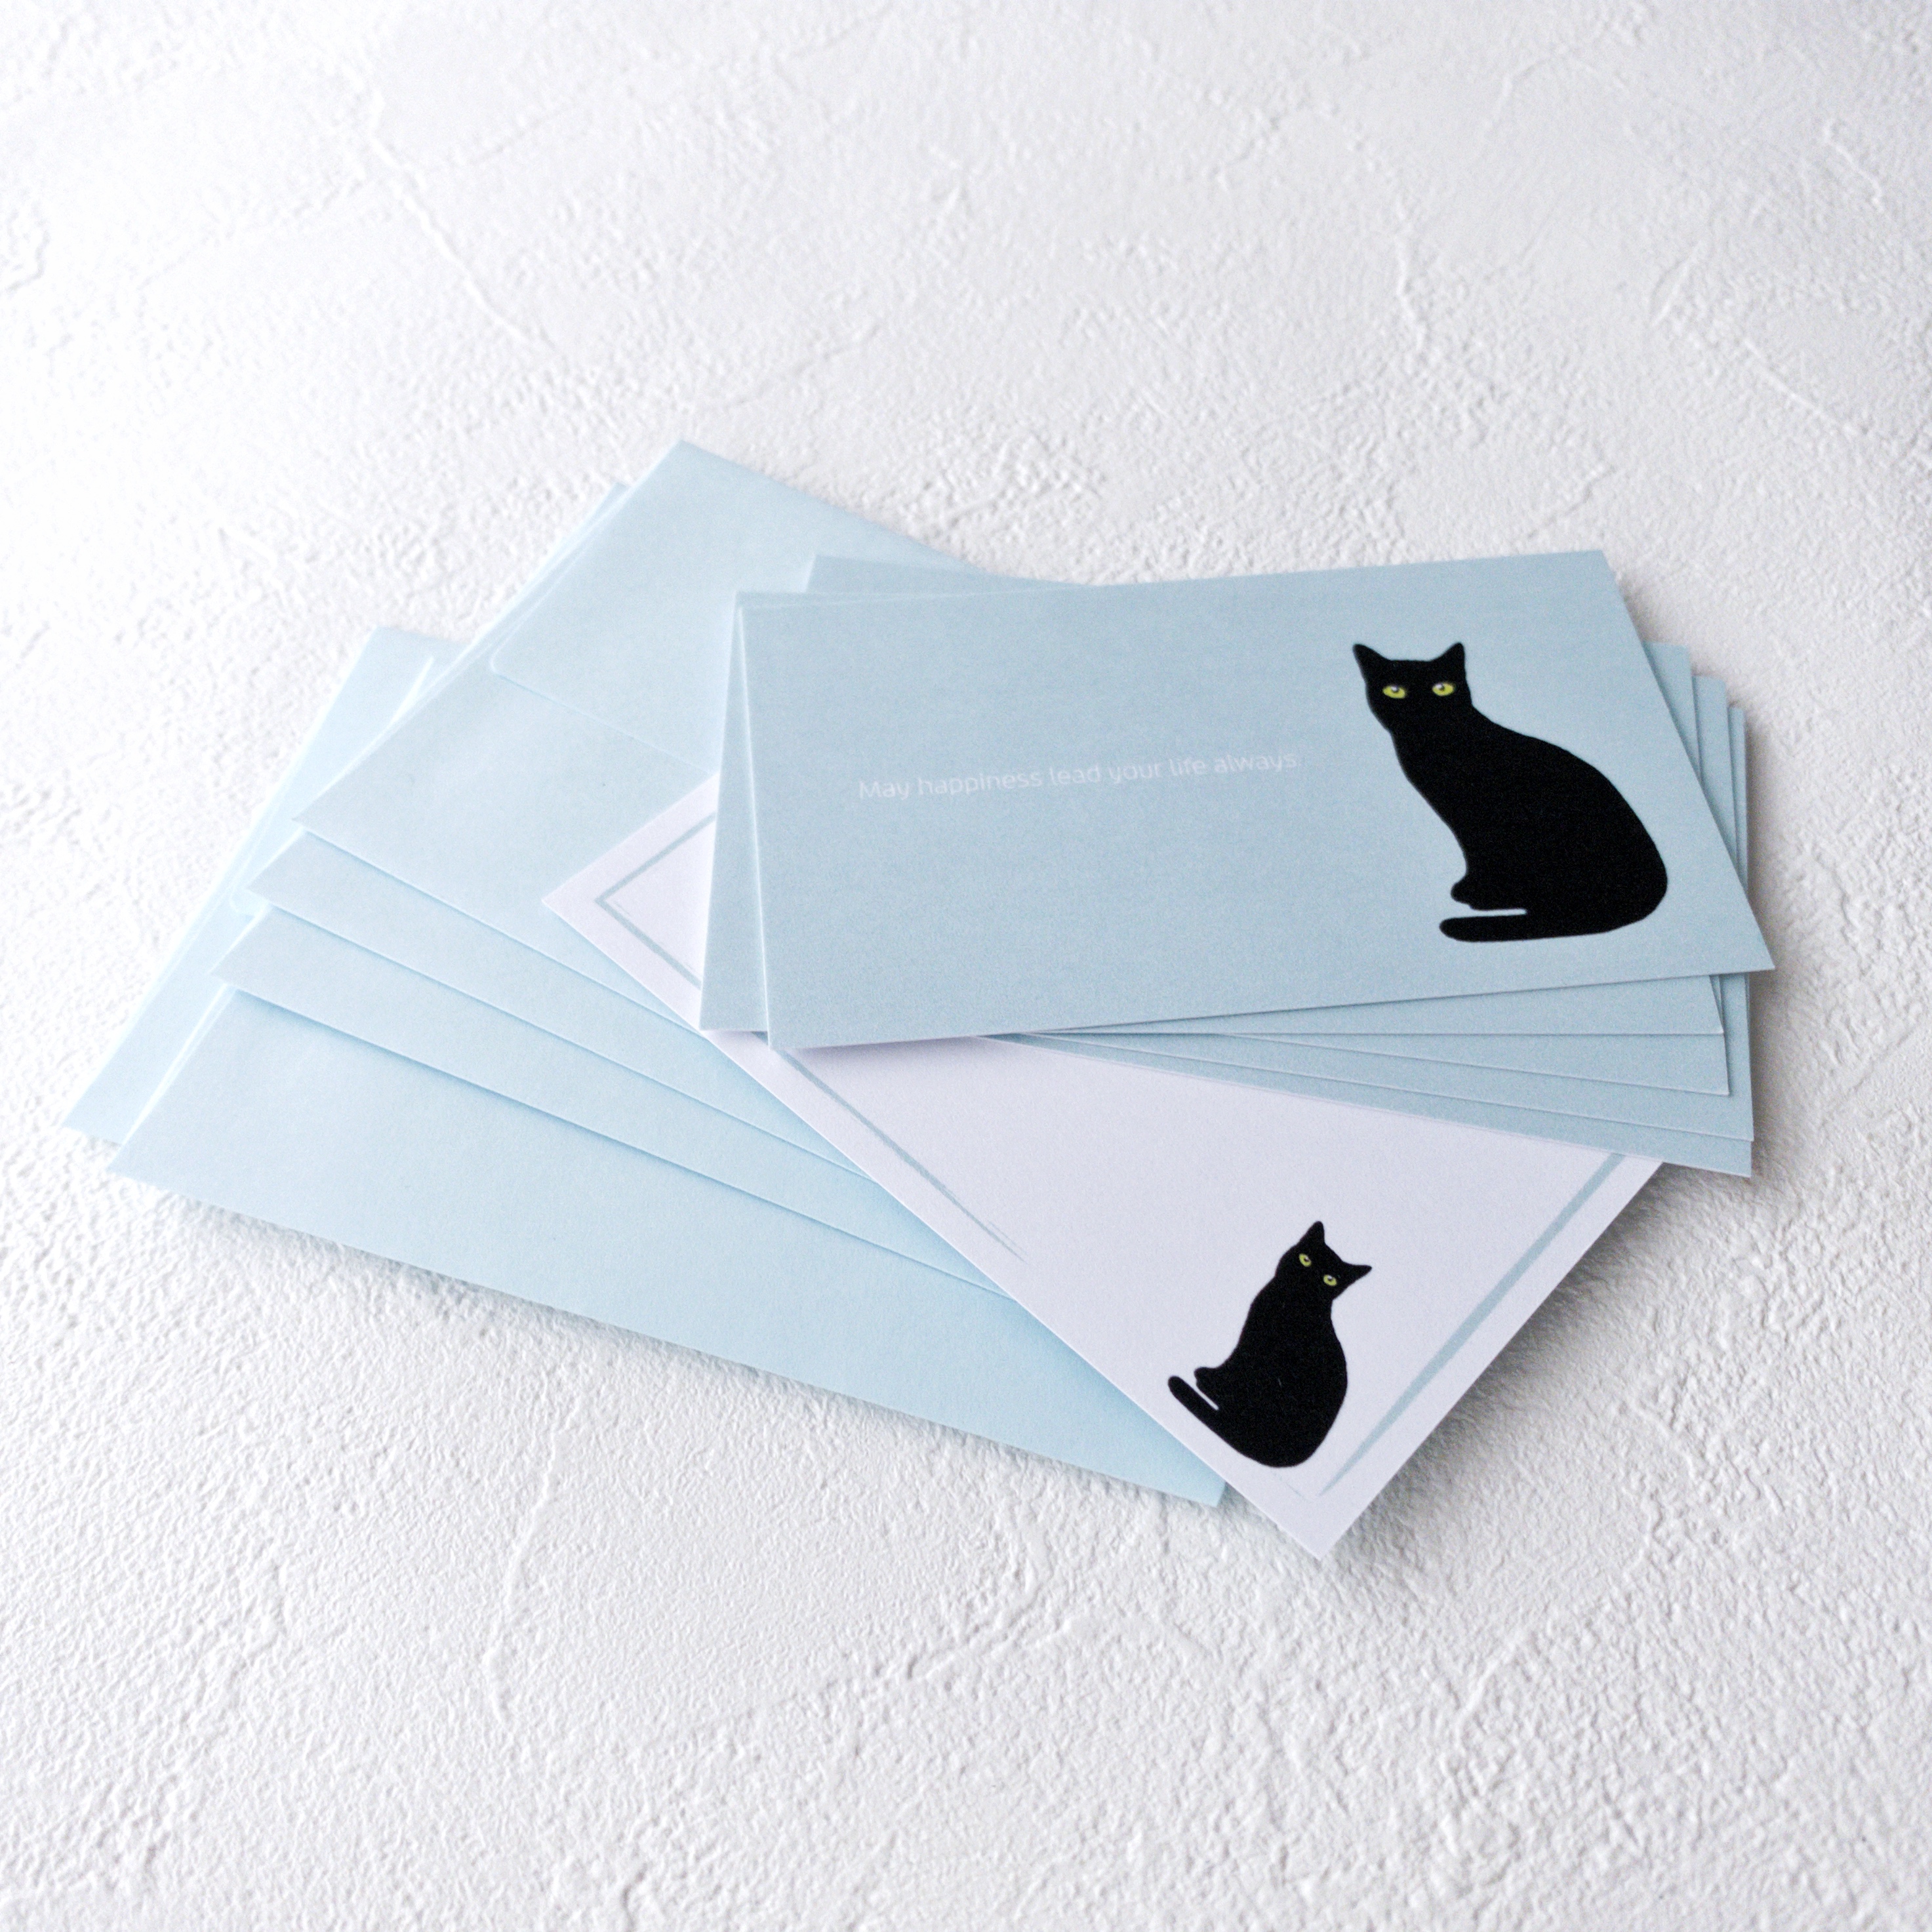 メッセージカードセット 黒猫 5組 1枚 送料無料 Iichi ハンドメイド クラフト作品 手仕事品の通販